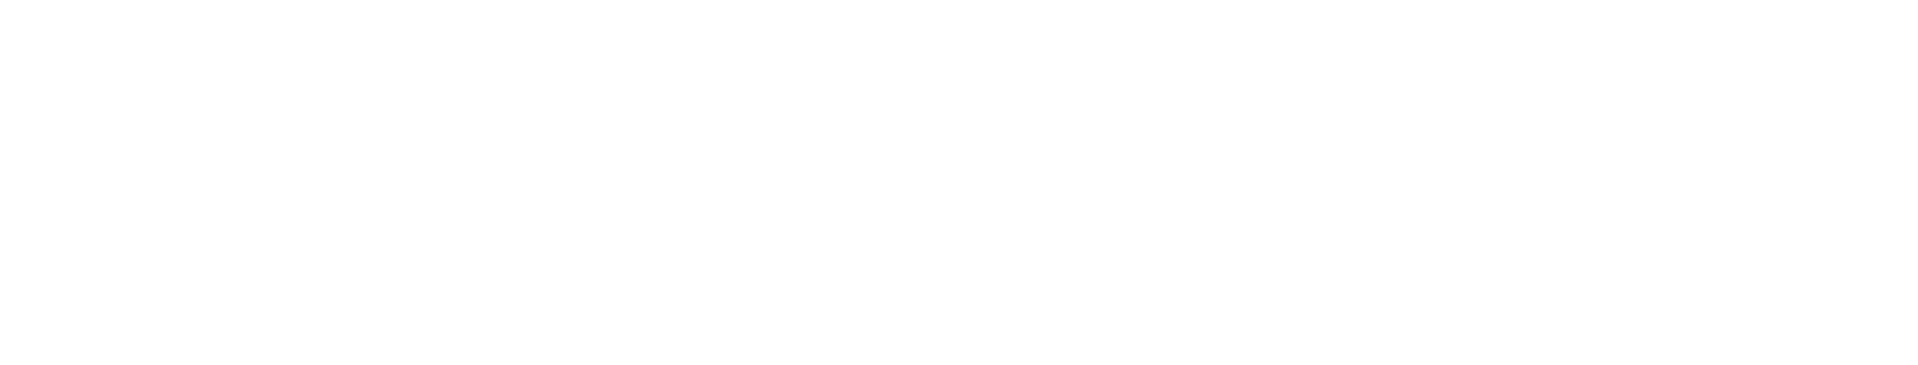 Snowvillage Inn logo